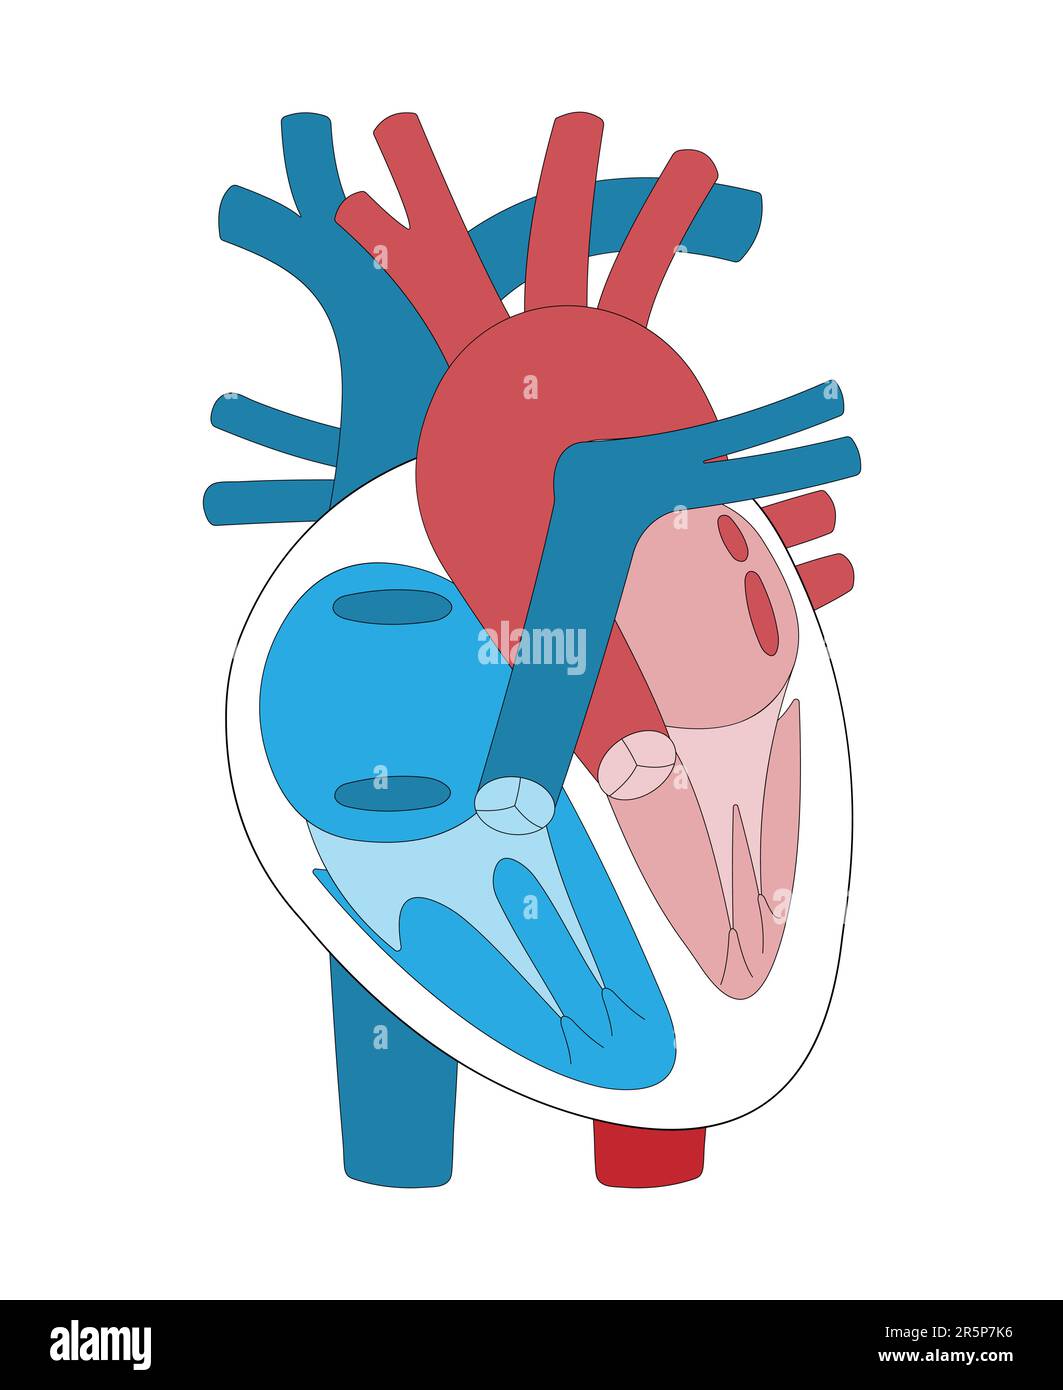 L'illustrazione mostra le camere del cuore, le valvole del cuore e i vasi sanguigni. Illustrazione Vettoriale